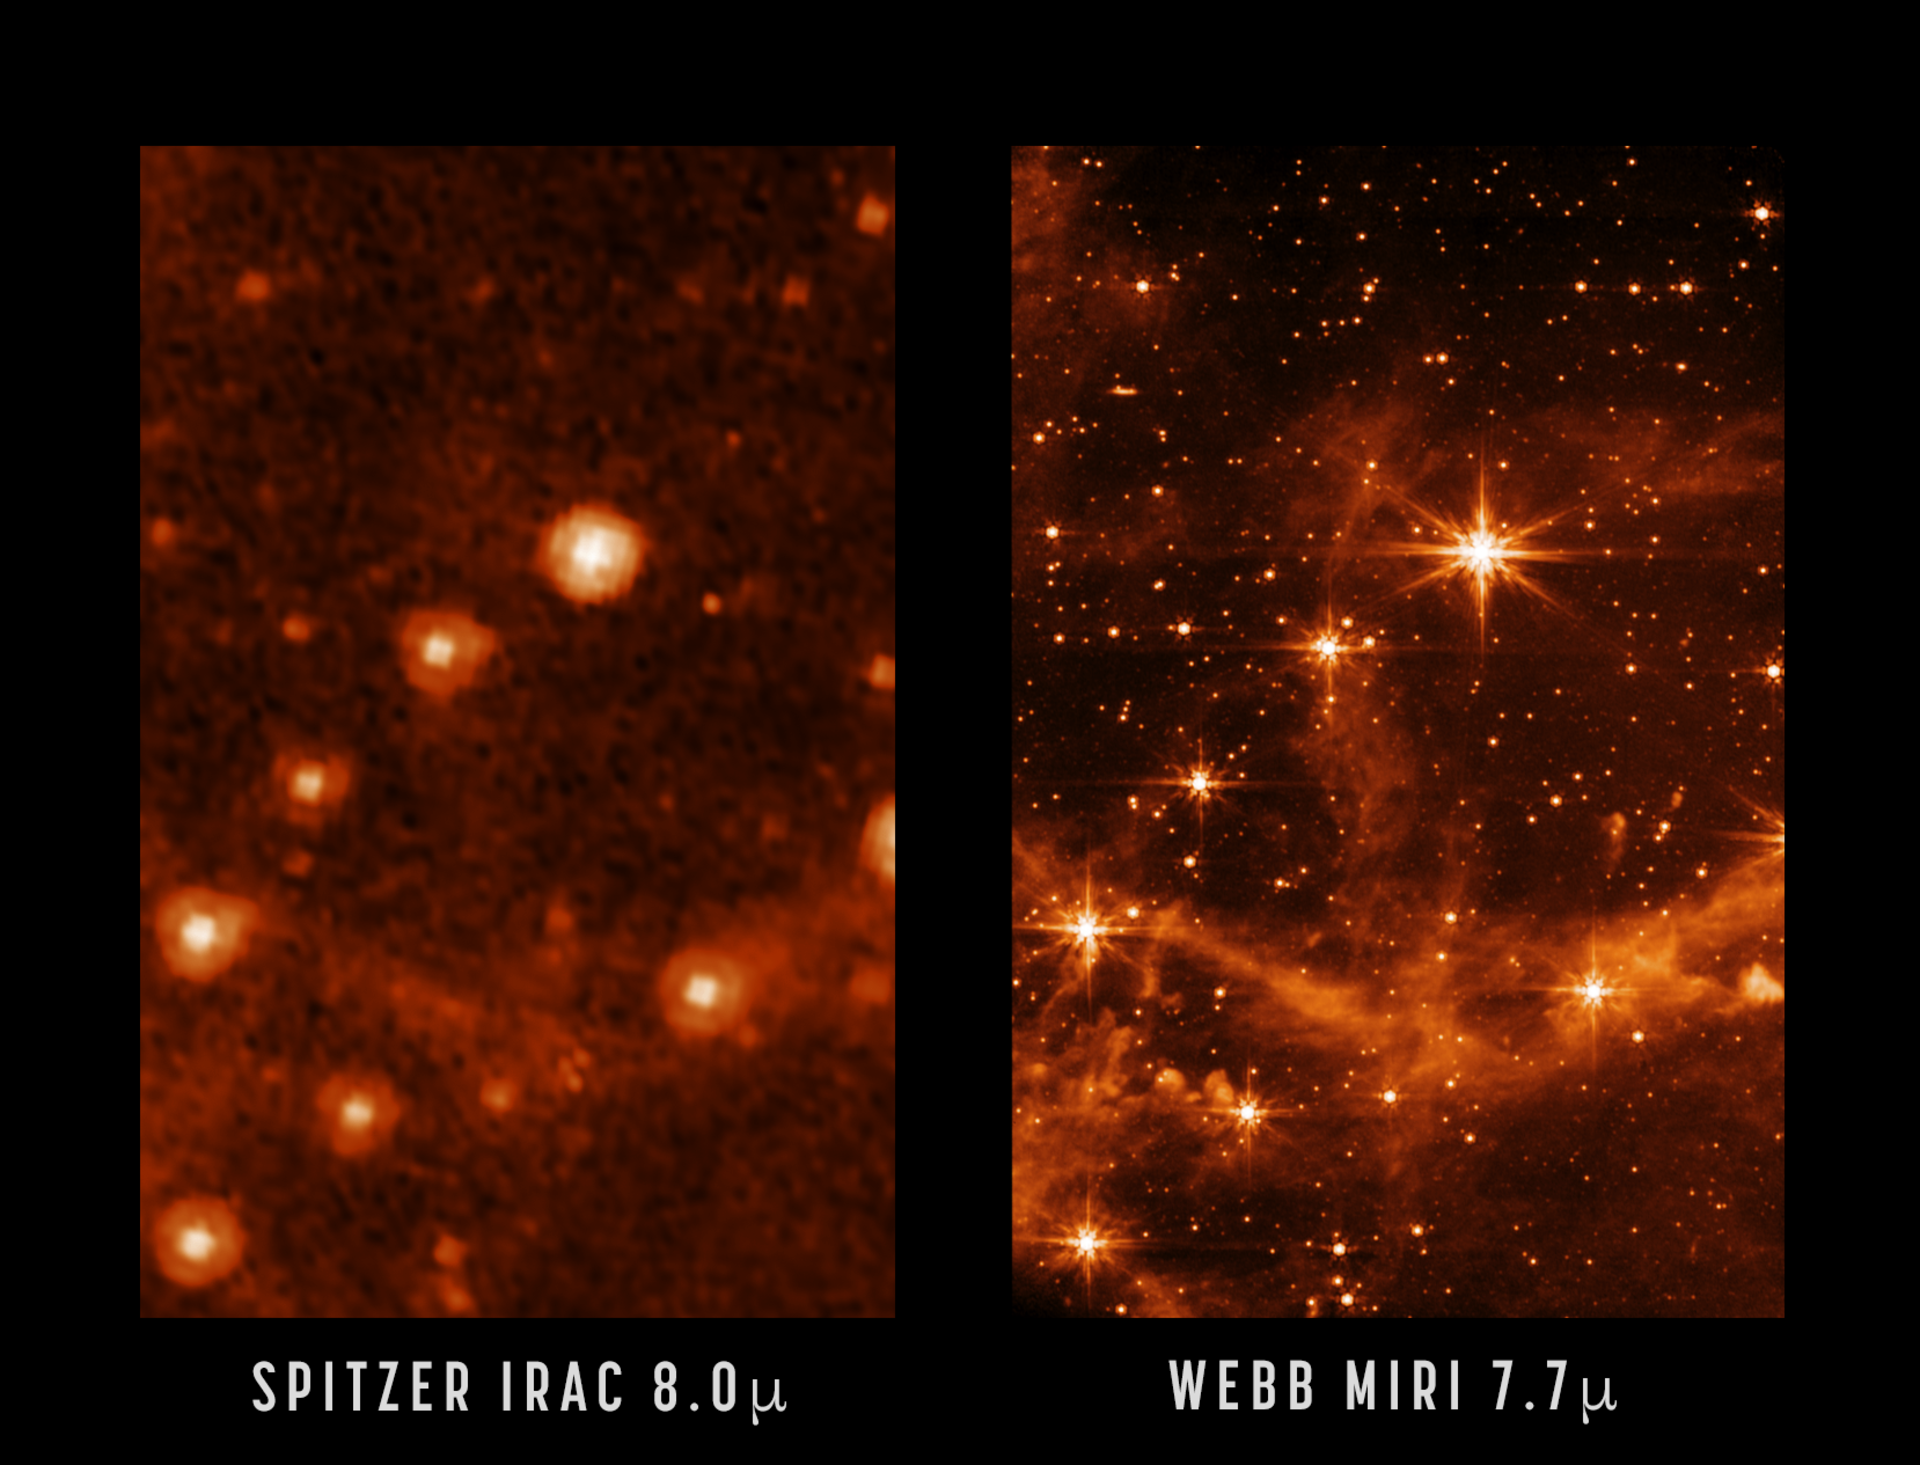 史匹哲太空望遠鏡与詹姆斯·韦伯太空望远镜拍攝的大麥哲倫星系